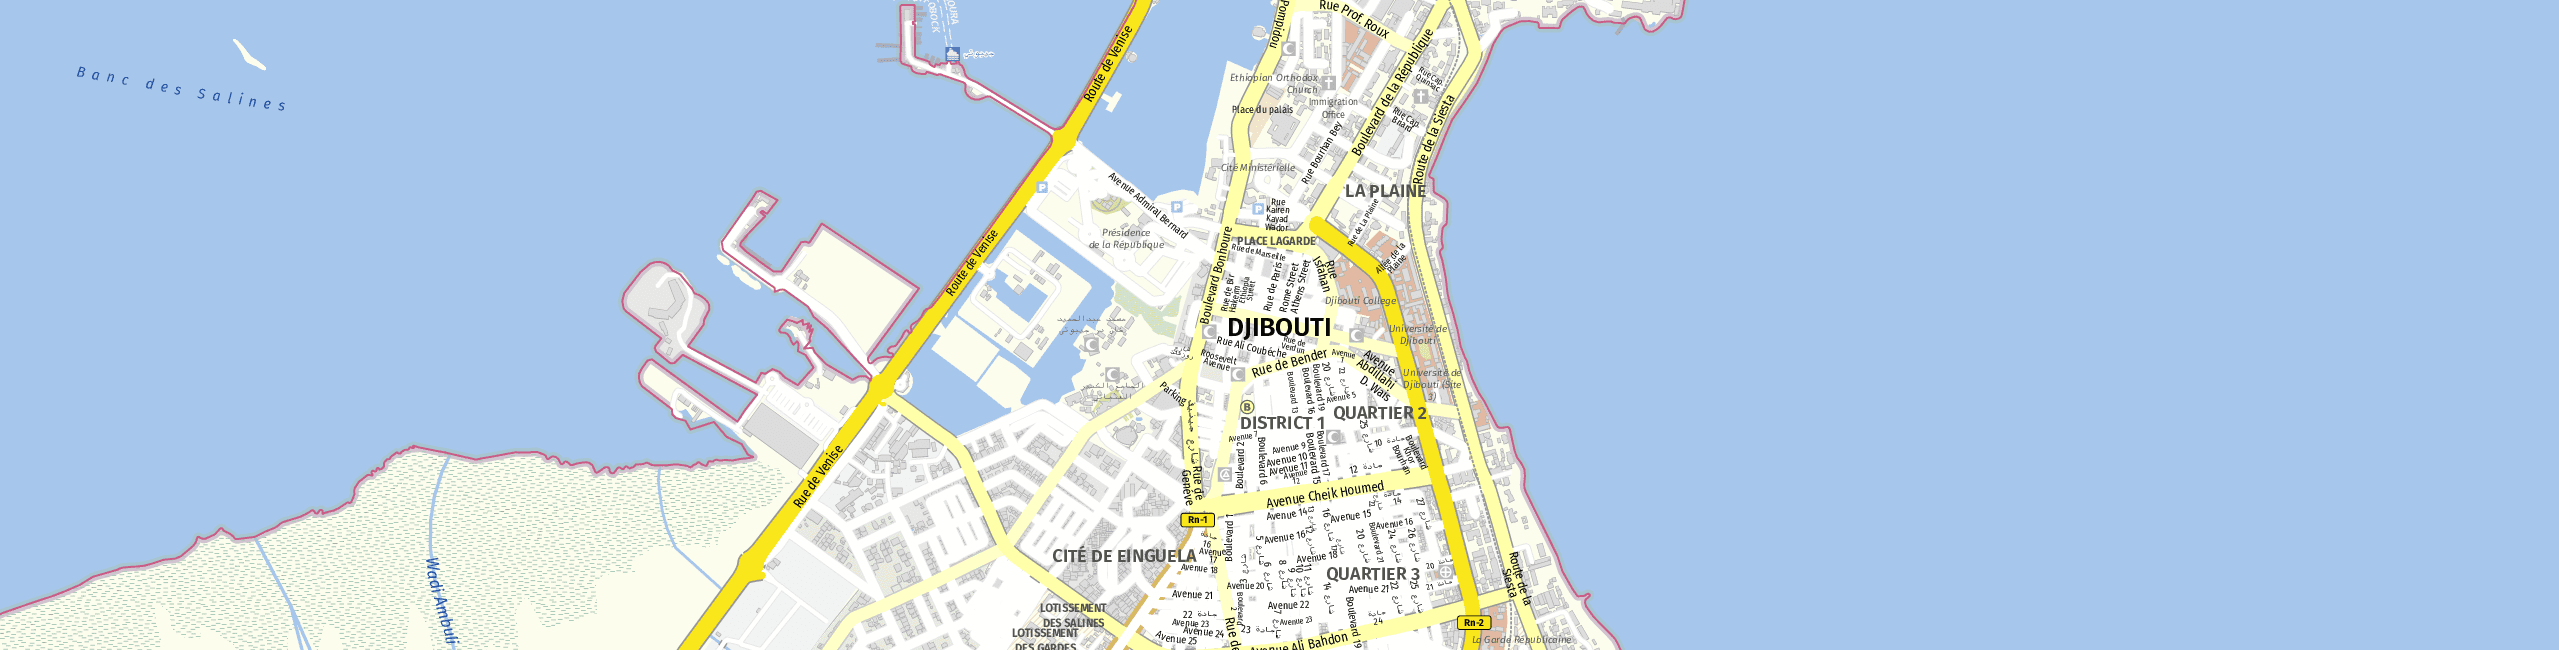 Stadtplan Djibouti zum Downloaden.